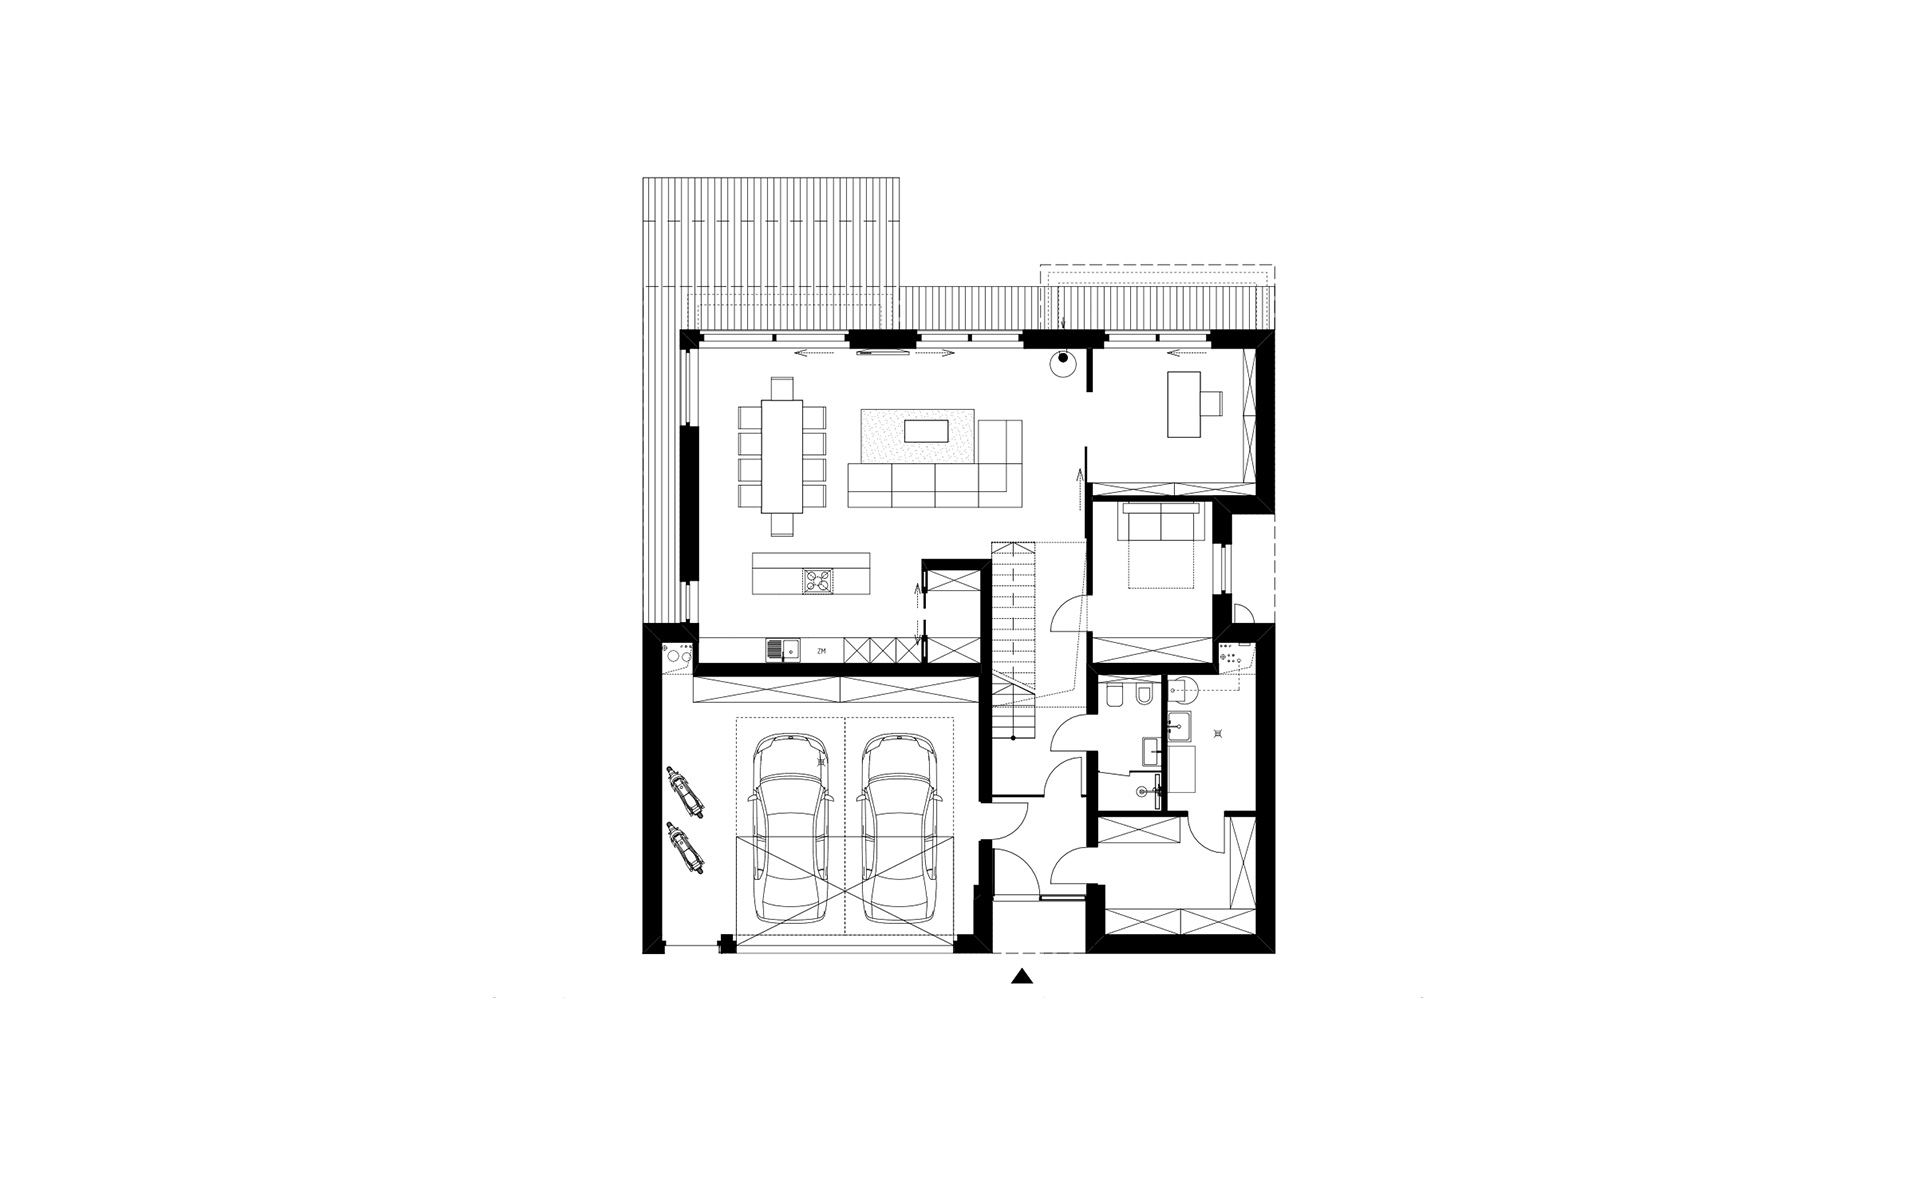 Obraz projektu parteru nowoczesnego domu piętrowego